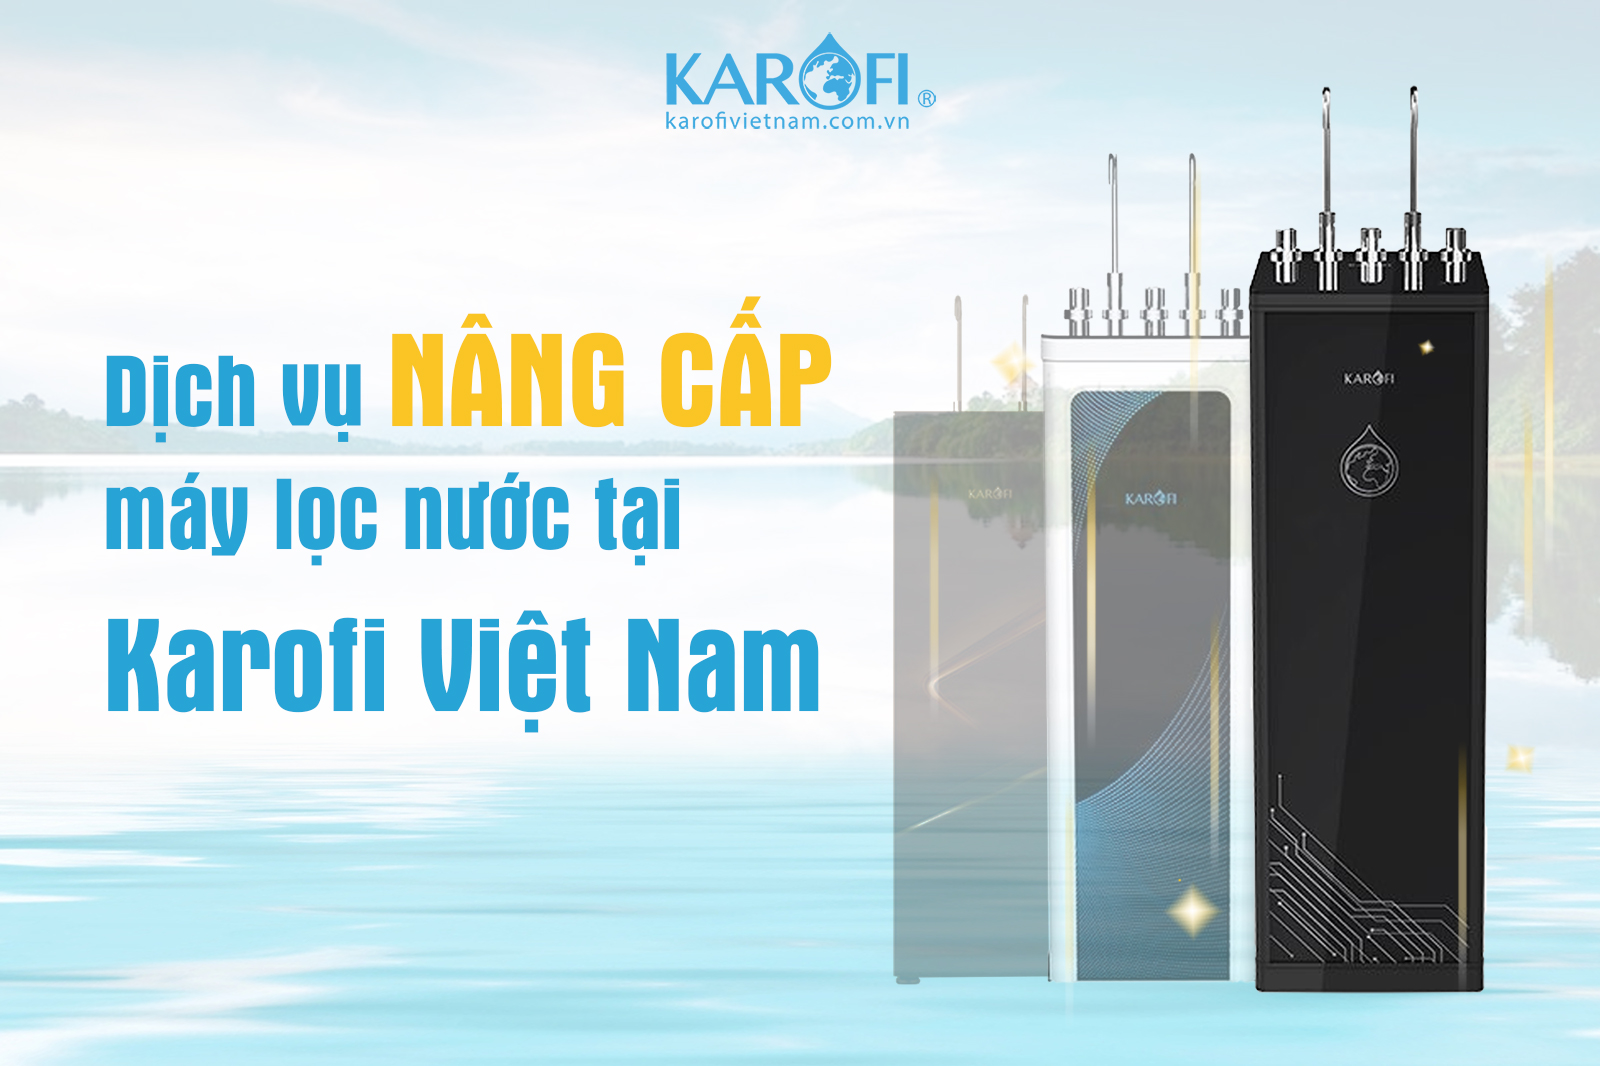 Nâng cấp máy lọc nước tại Karofi Việt Nam